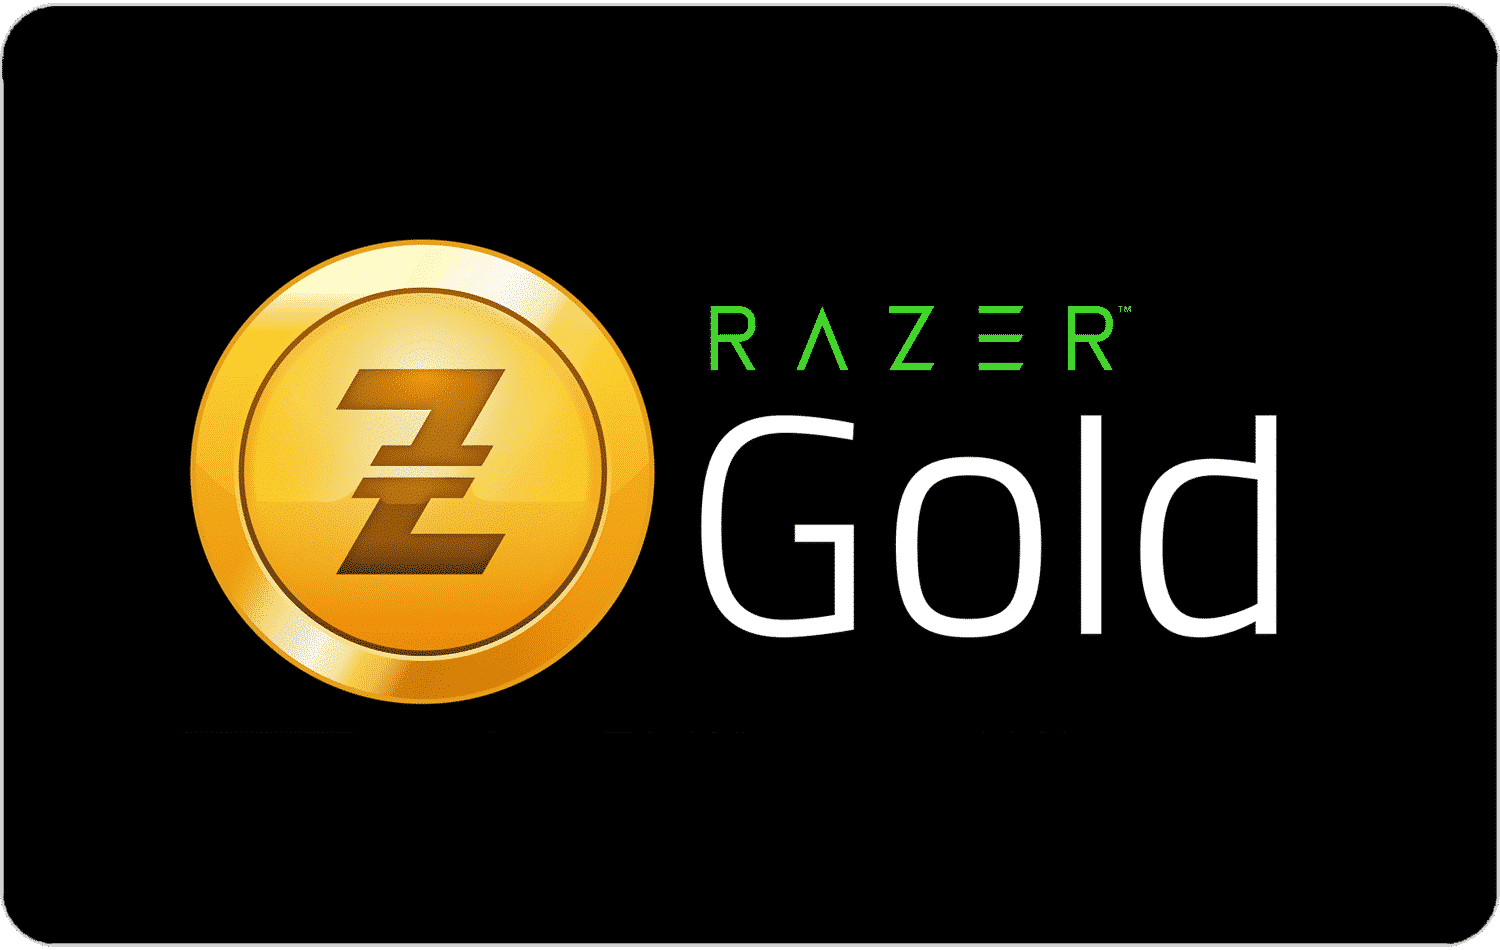 Razer gold nos consoles - aproveite agora | 4a0c2881 razer | tecnologia | razer gold nos consoles tecnologia